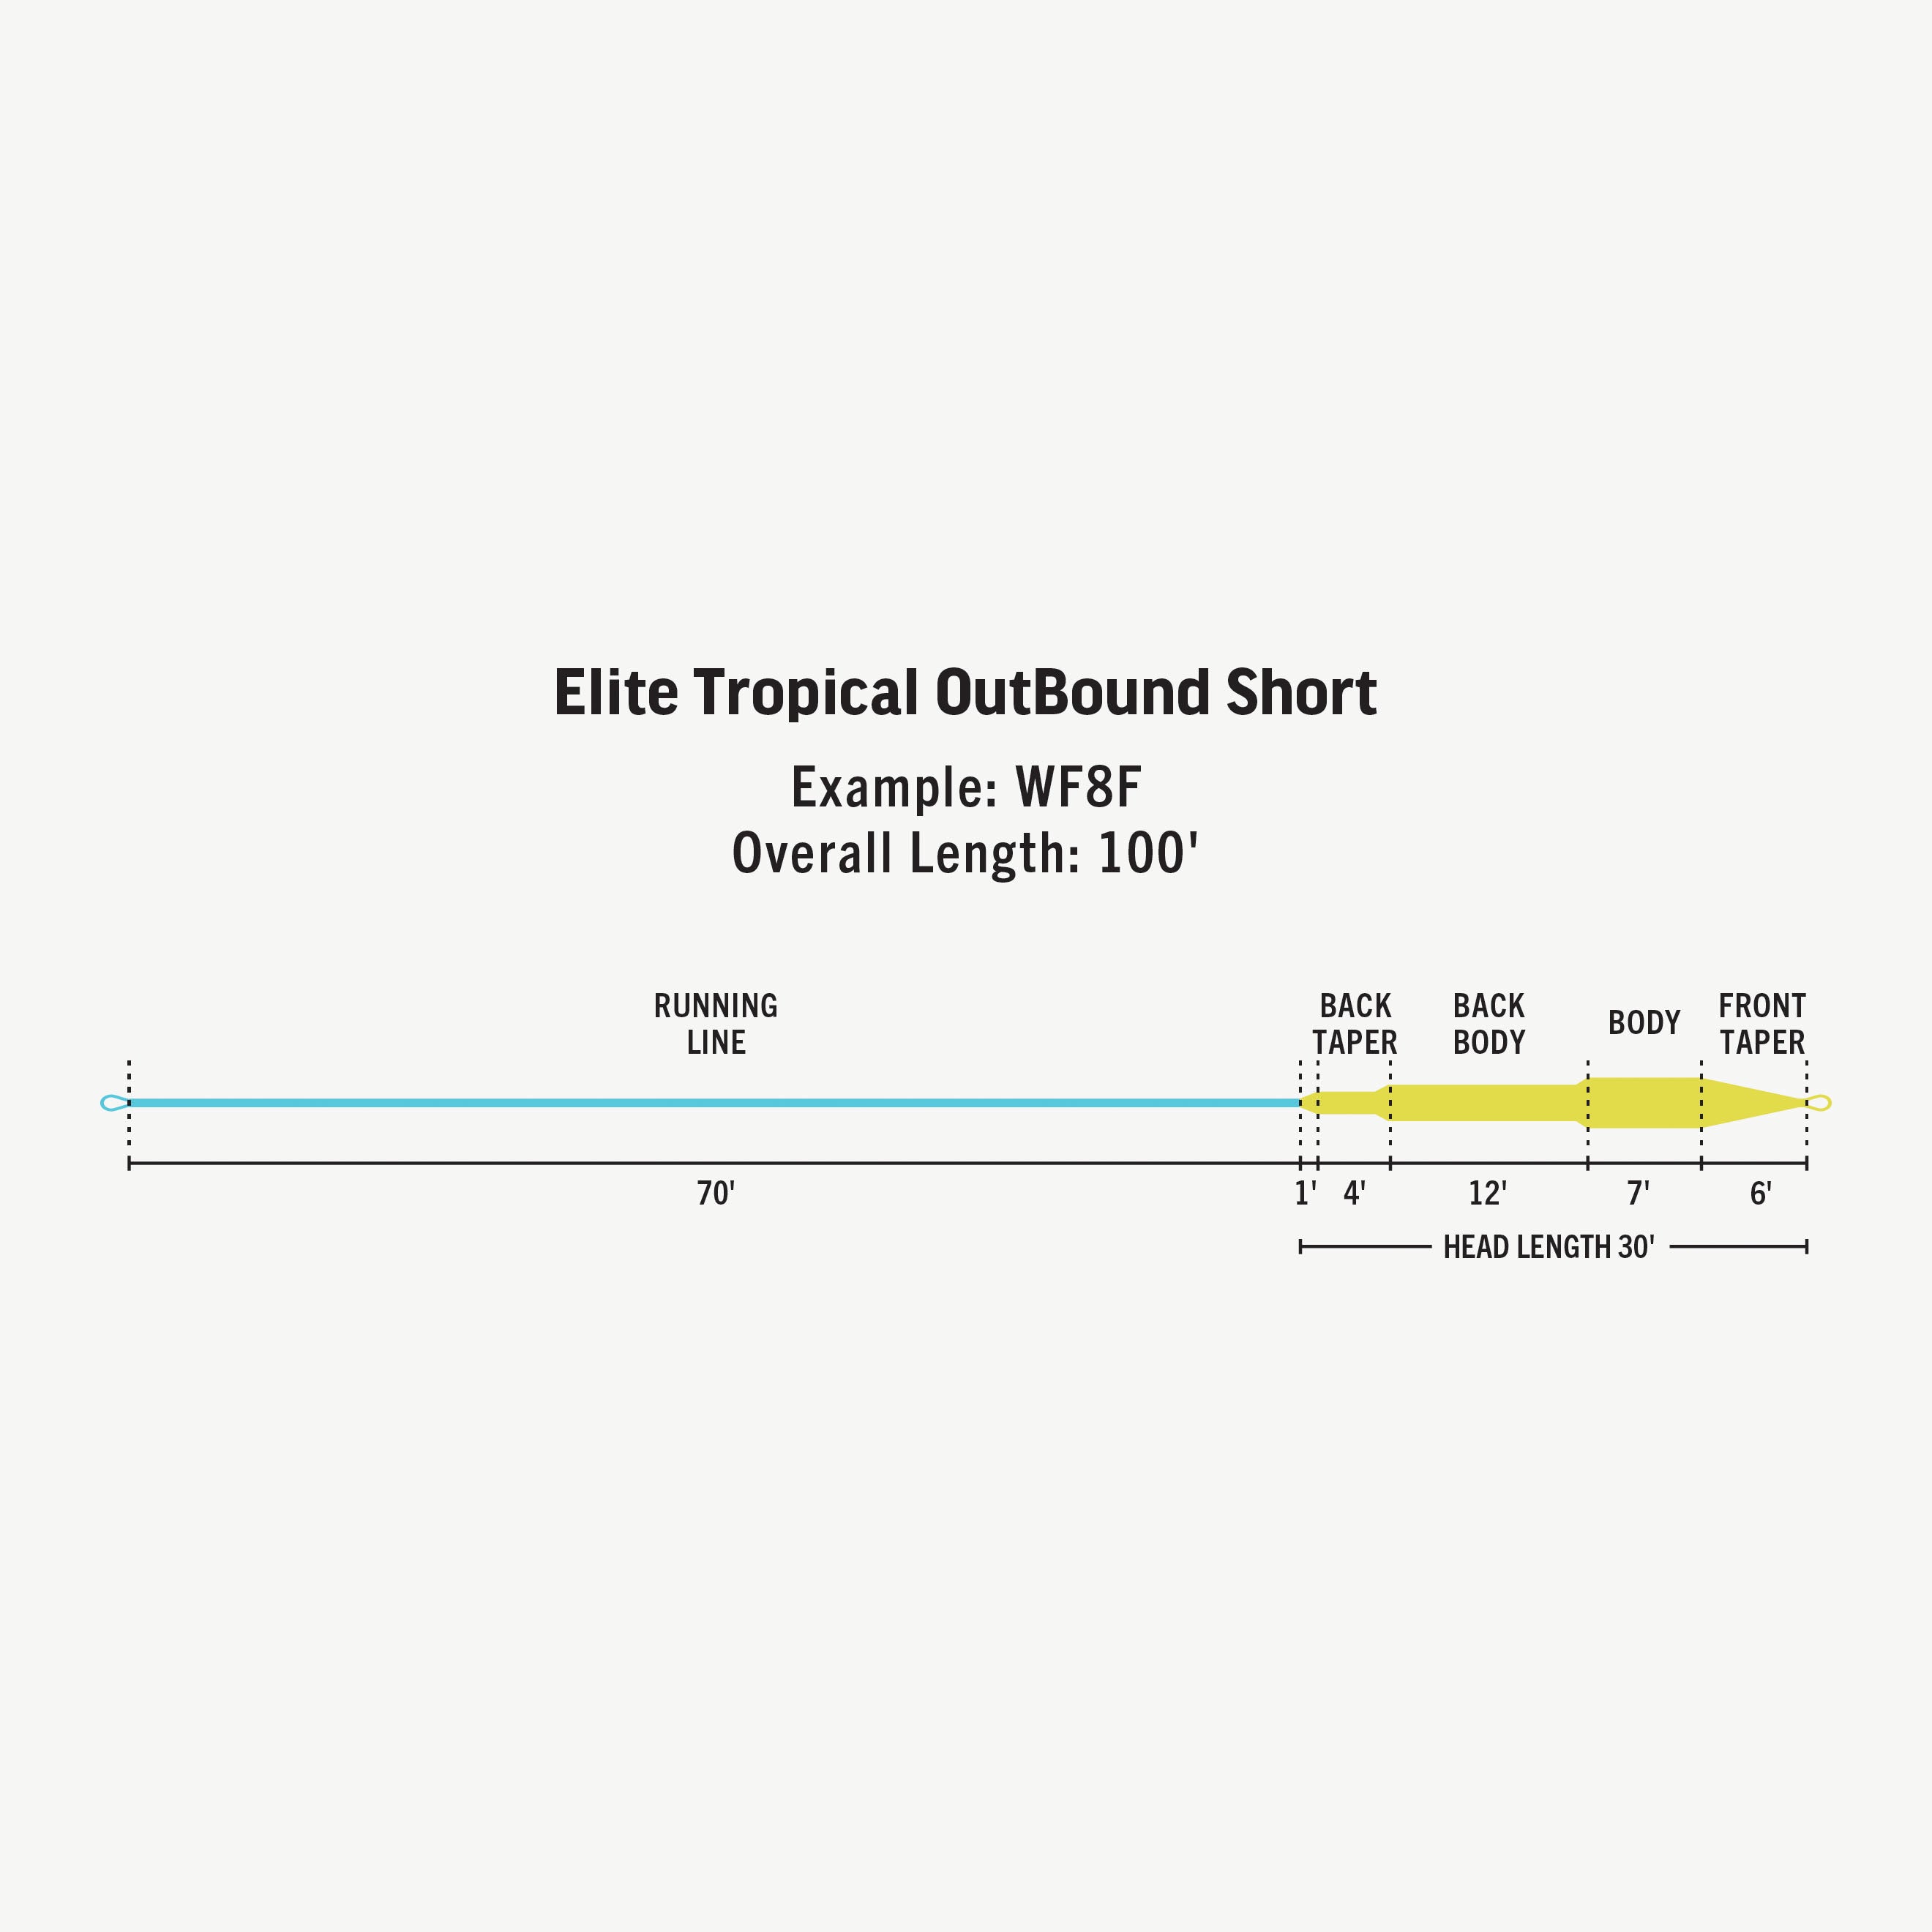 Rio Elite Tropical Outbound Short Fly Line